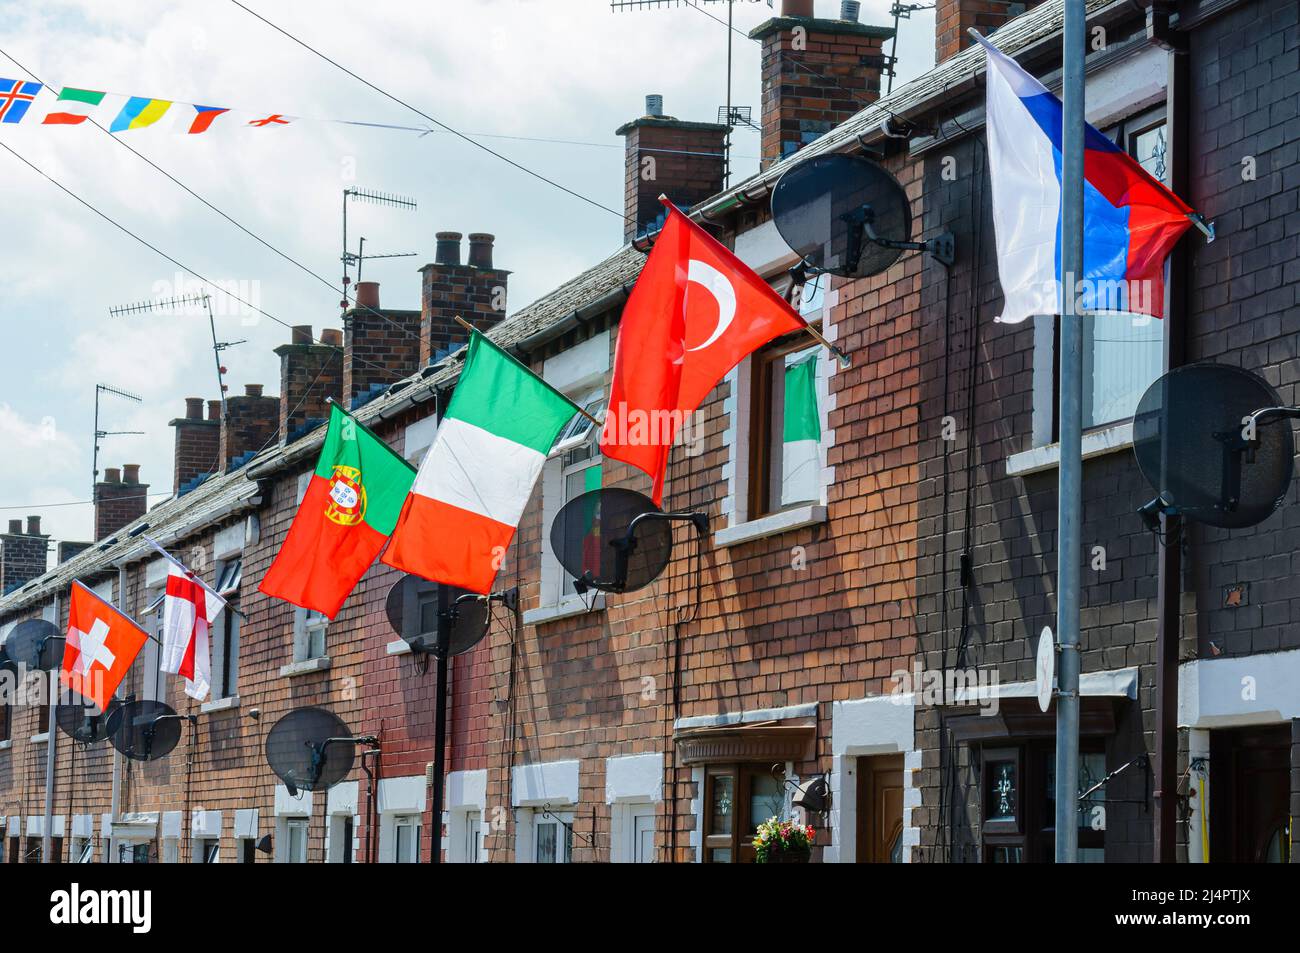 BELFAST, NORDIRLAND. 04 JUN 2016: Häuser im Iris Drive in West Belfast sind mit den Flaggen aller 24 Länder geschmückt, die sich für die Euro 2016 qualifiziert haben. Die Bewohner organisierten ein Gewinnspiel, bei dem jedes Haus die Flagge ihres Landes führen musste. Es wird angenommen, dass zum ersten Mal die Flaggen von England und Nordirland freiwillig in diesem unerschütterlichen republikanischen Gebiet von West-Belfast geflogen wurden. Stockfoto